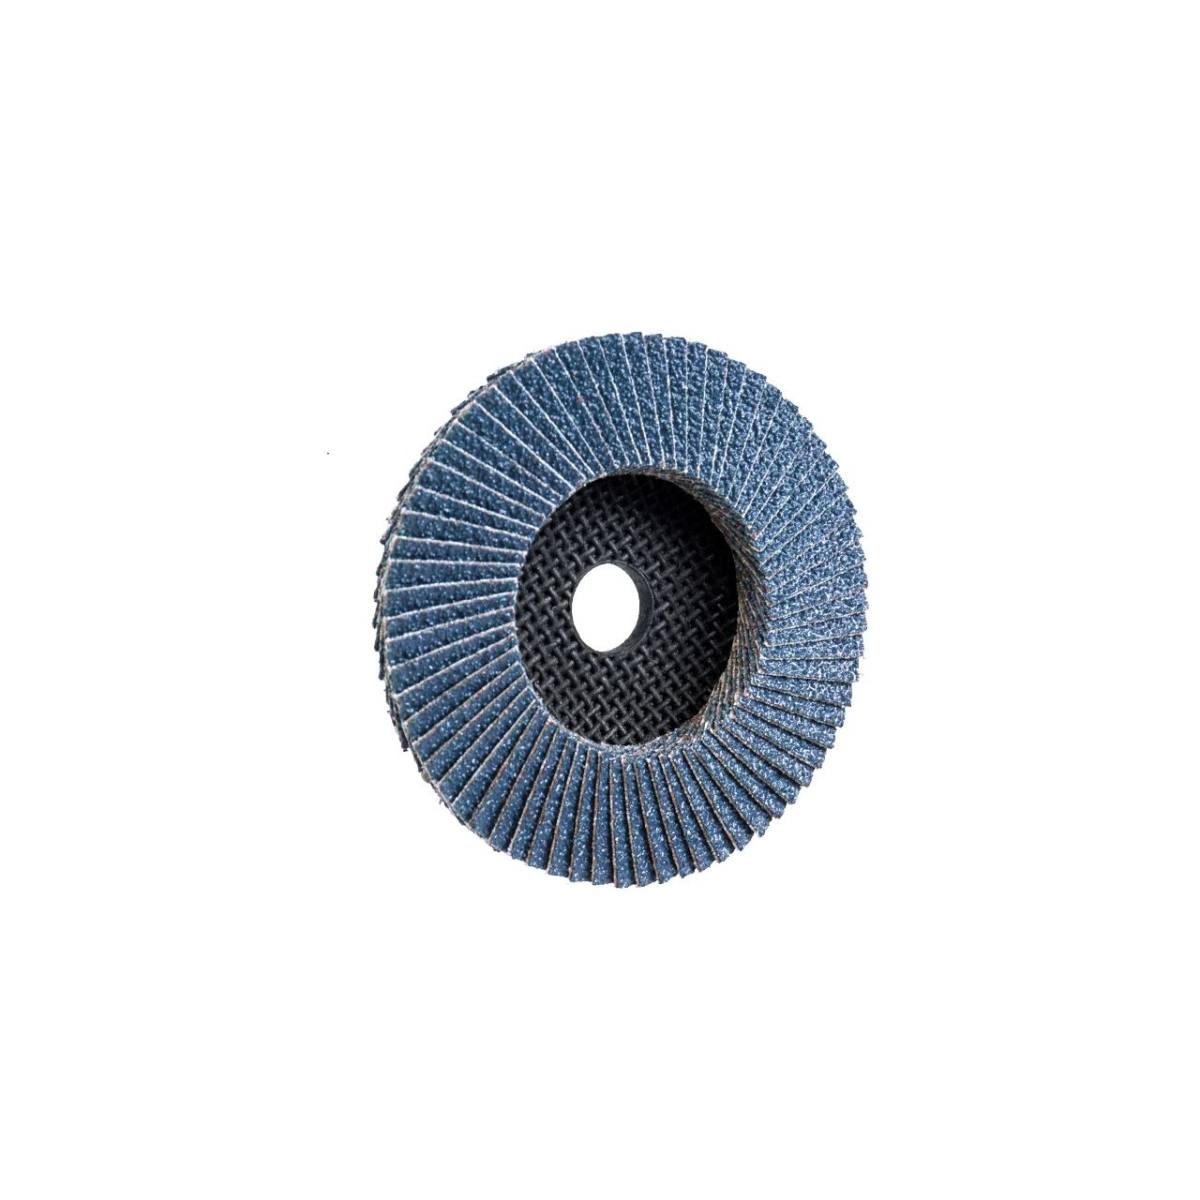 TRIMFIX ZIRCOPUR, 100 mm x 16.0 mm, grit 120, flap disc